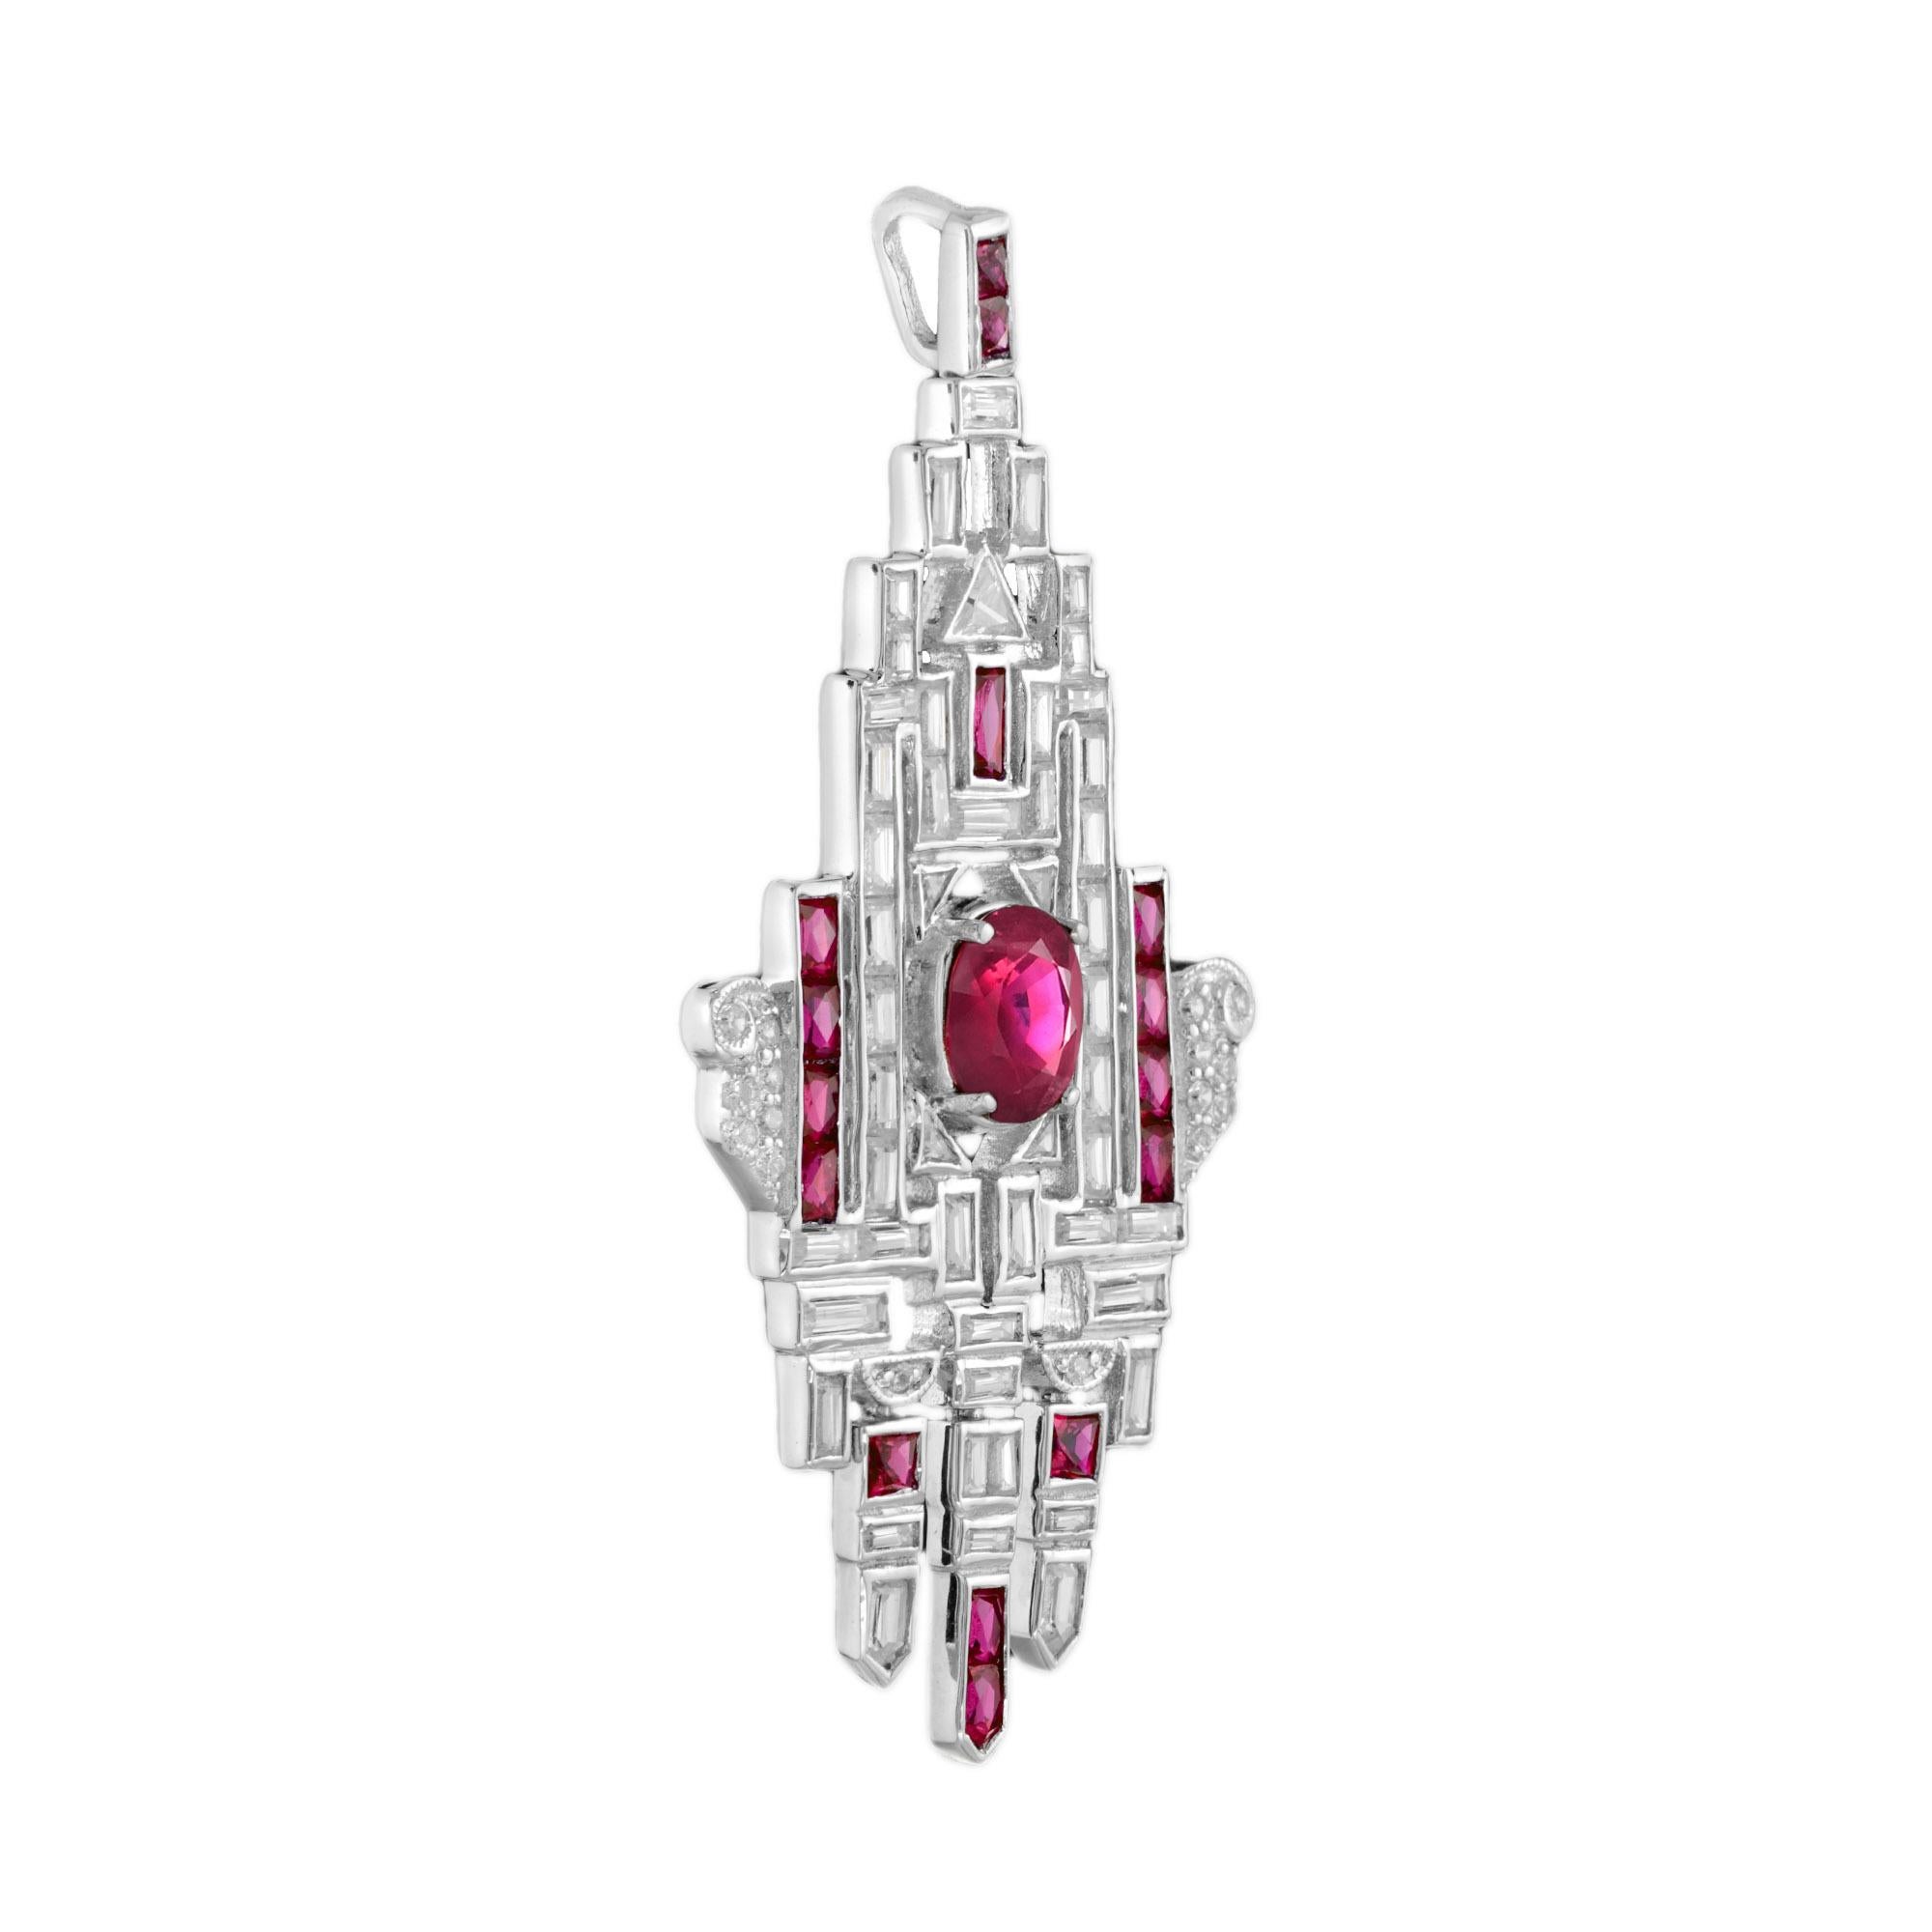 Avec une ligne graphique de rubis de taille française et de diamants multiformes, le pendentif est étonnamment unique dans le design Art déco. Le rubis ovale central pèse 1,5 carat et est encadré par un total de 5,11 diamants avec des rubis de 1,98